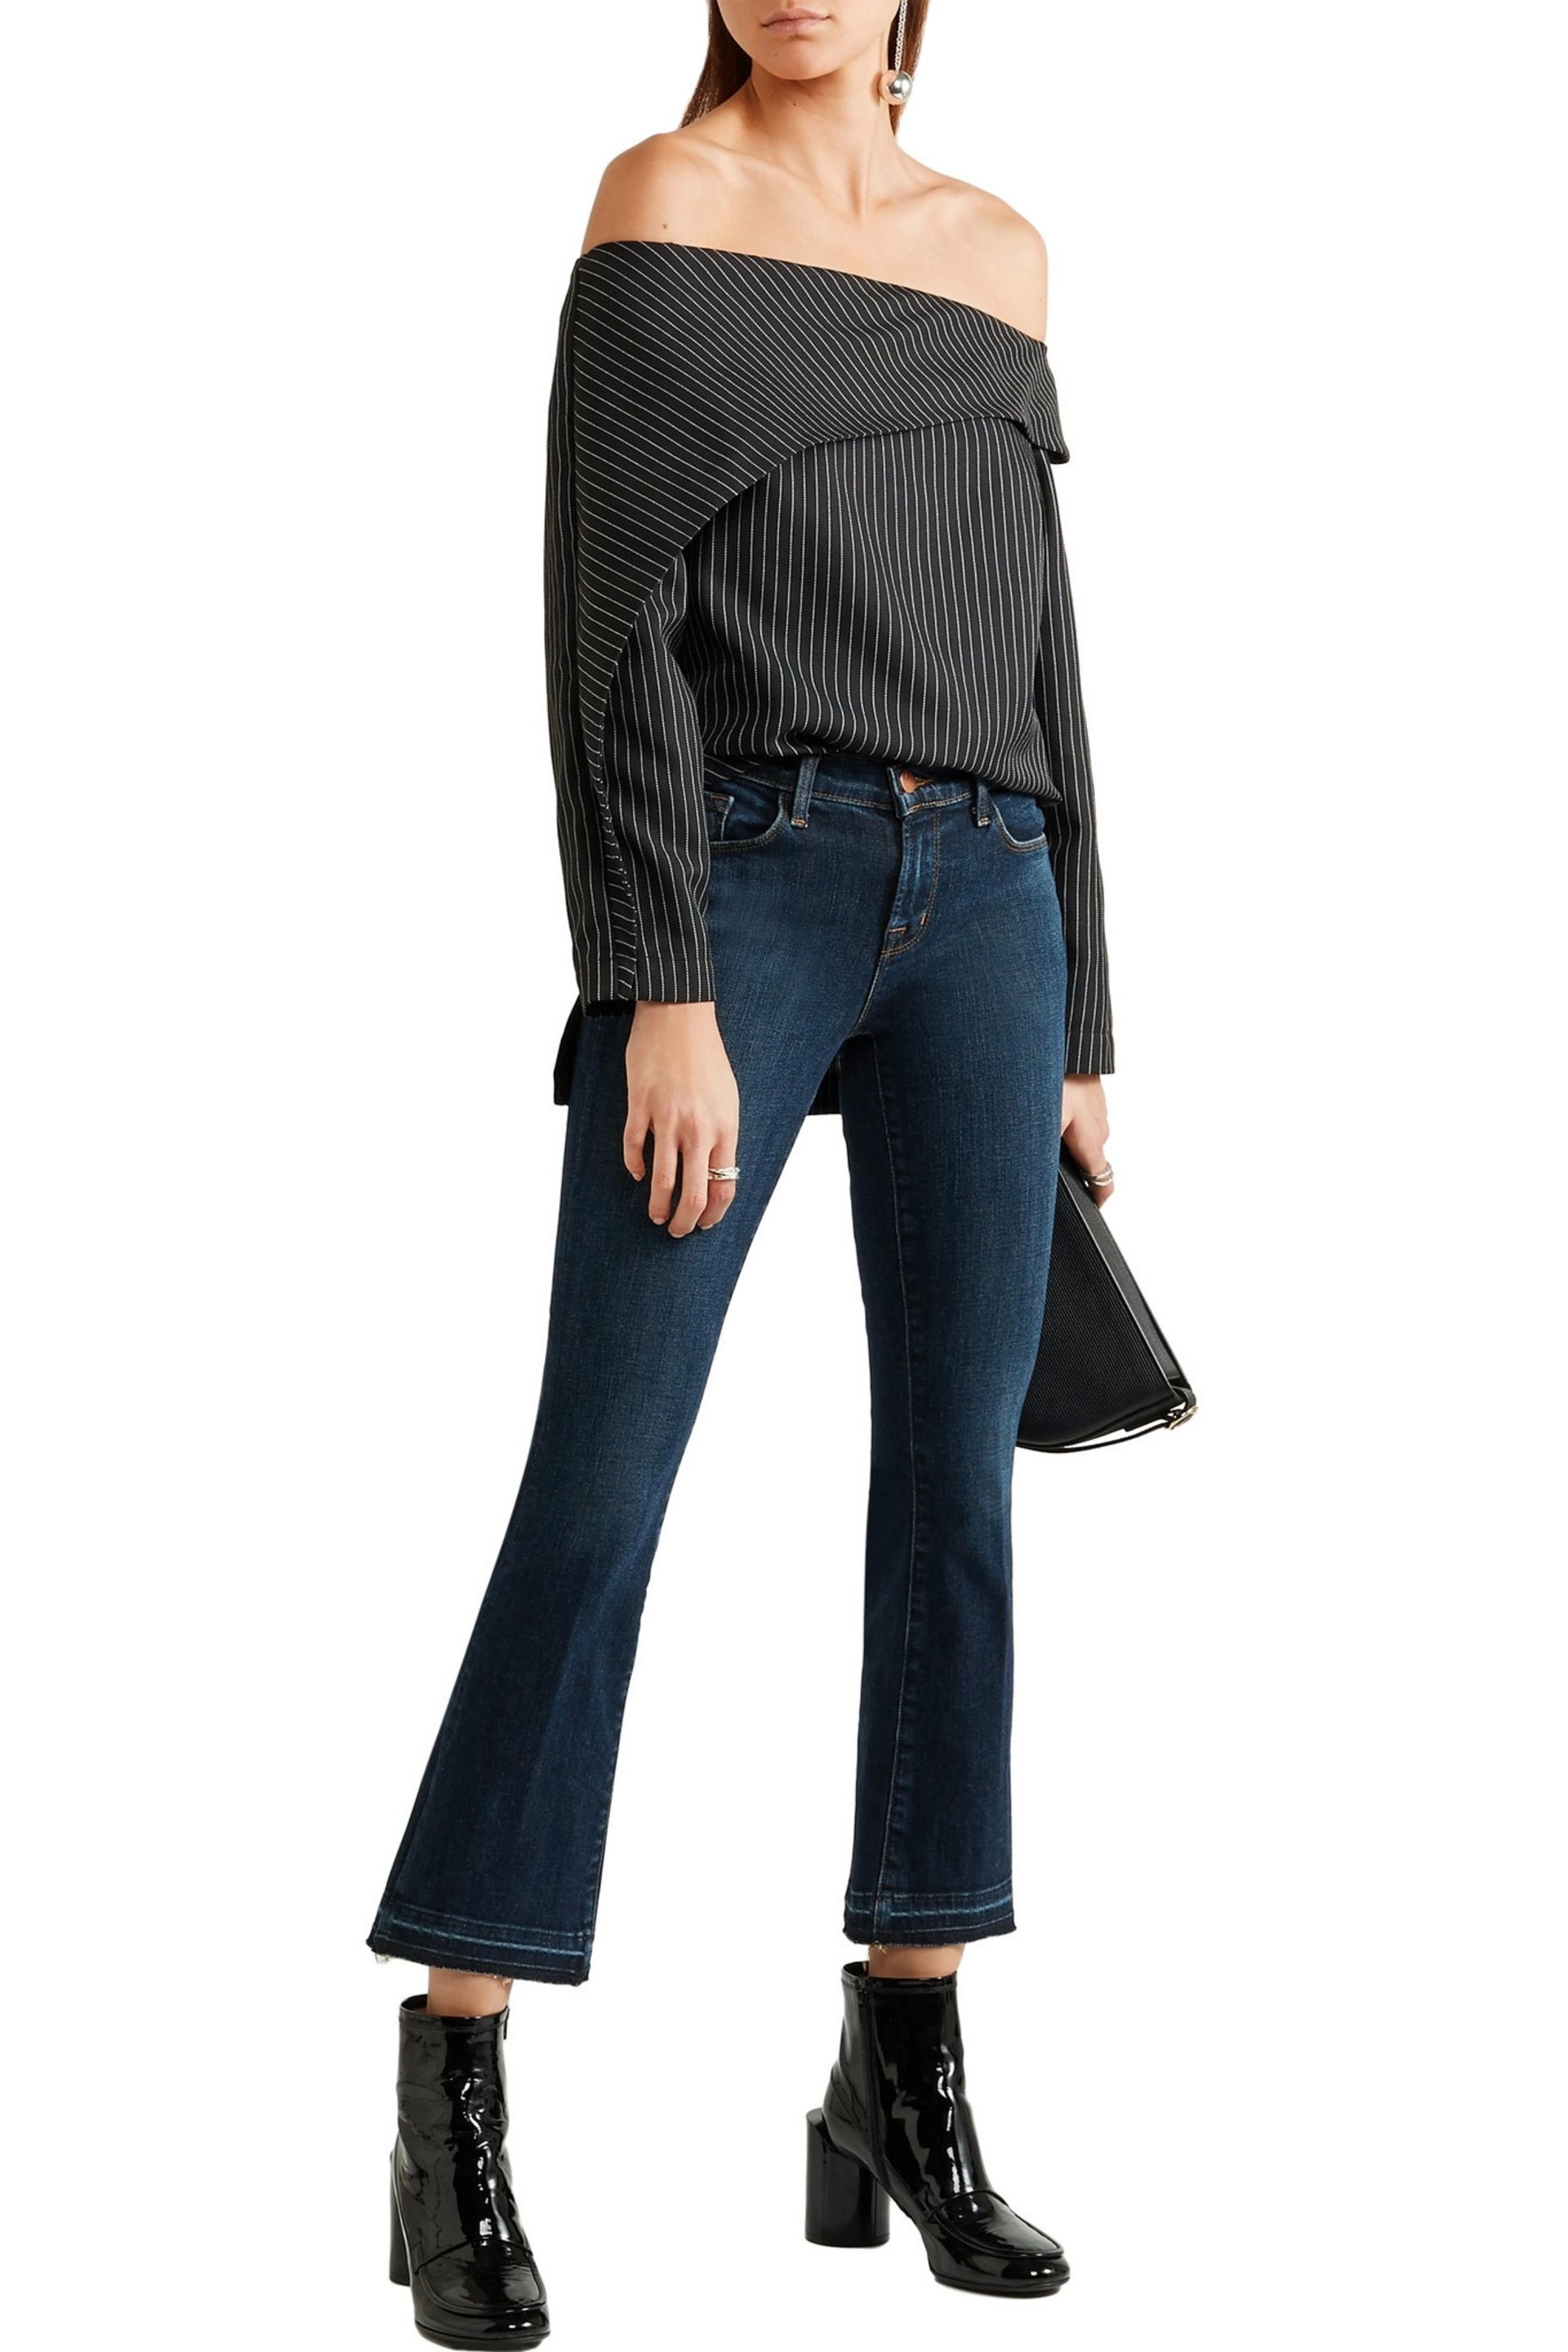  off-shoulder shoulder shirt +&nbsp;bootcut jeans  Image  via  